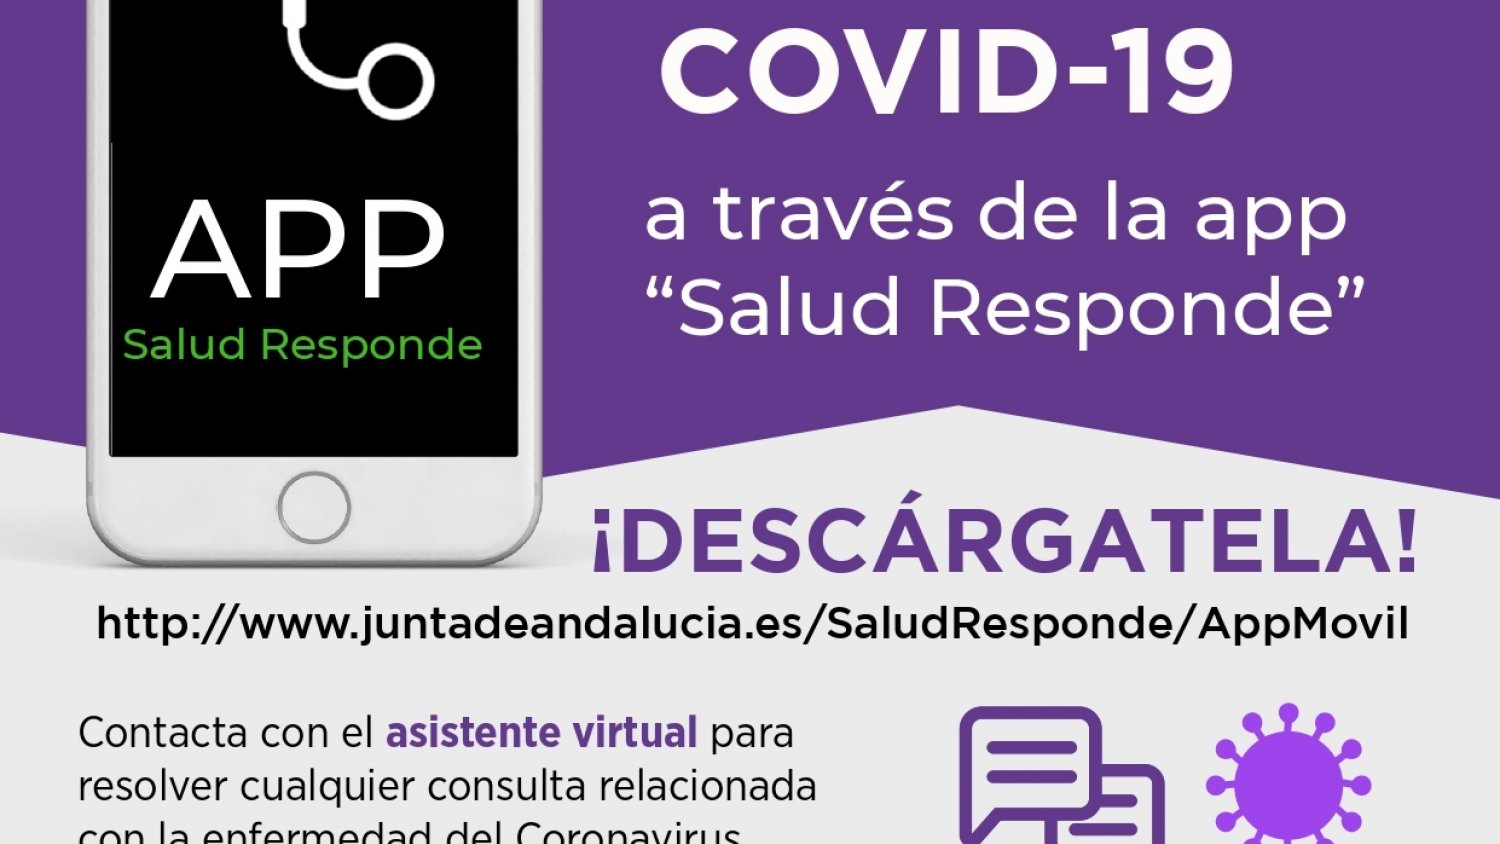 Andalucía crea un asistente virtual con inteligencia artificial de IBM para informar sobre el coronavirus